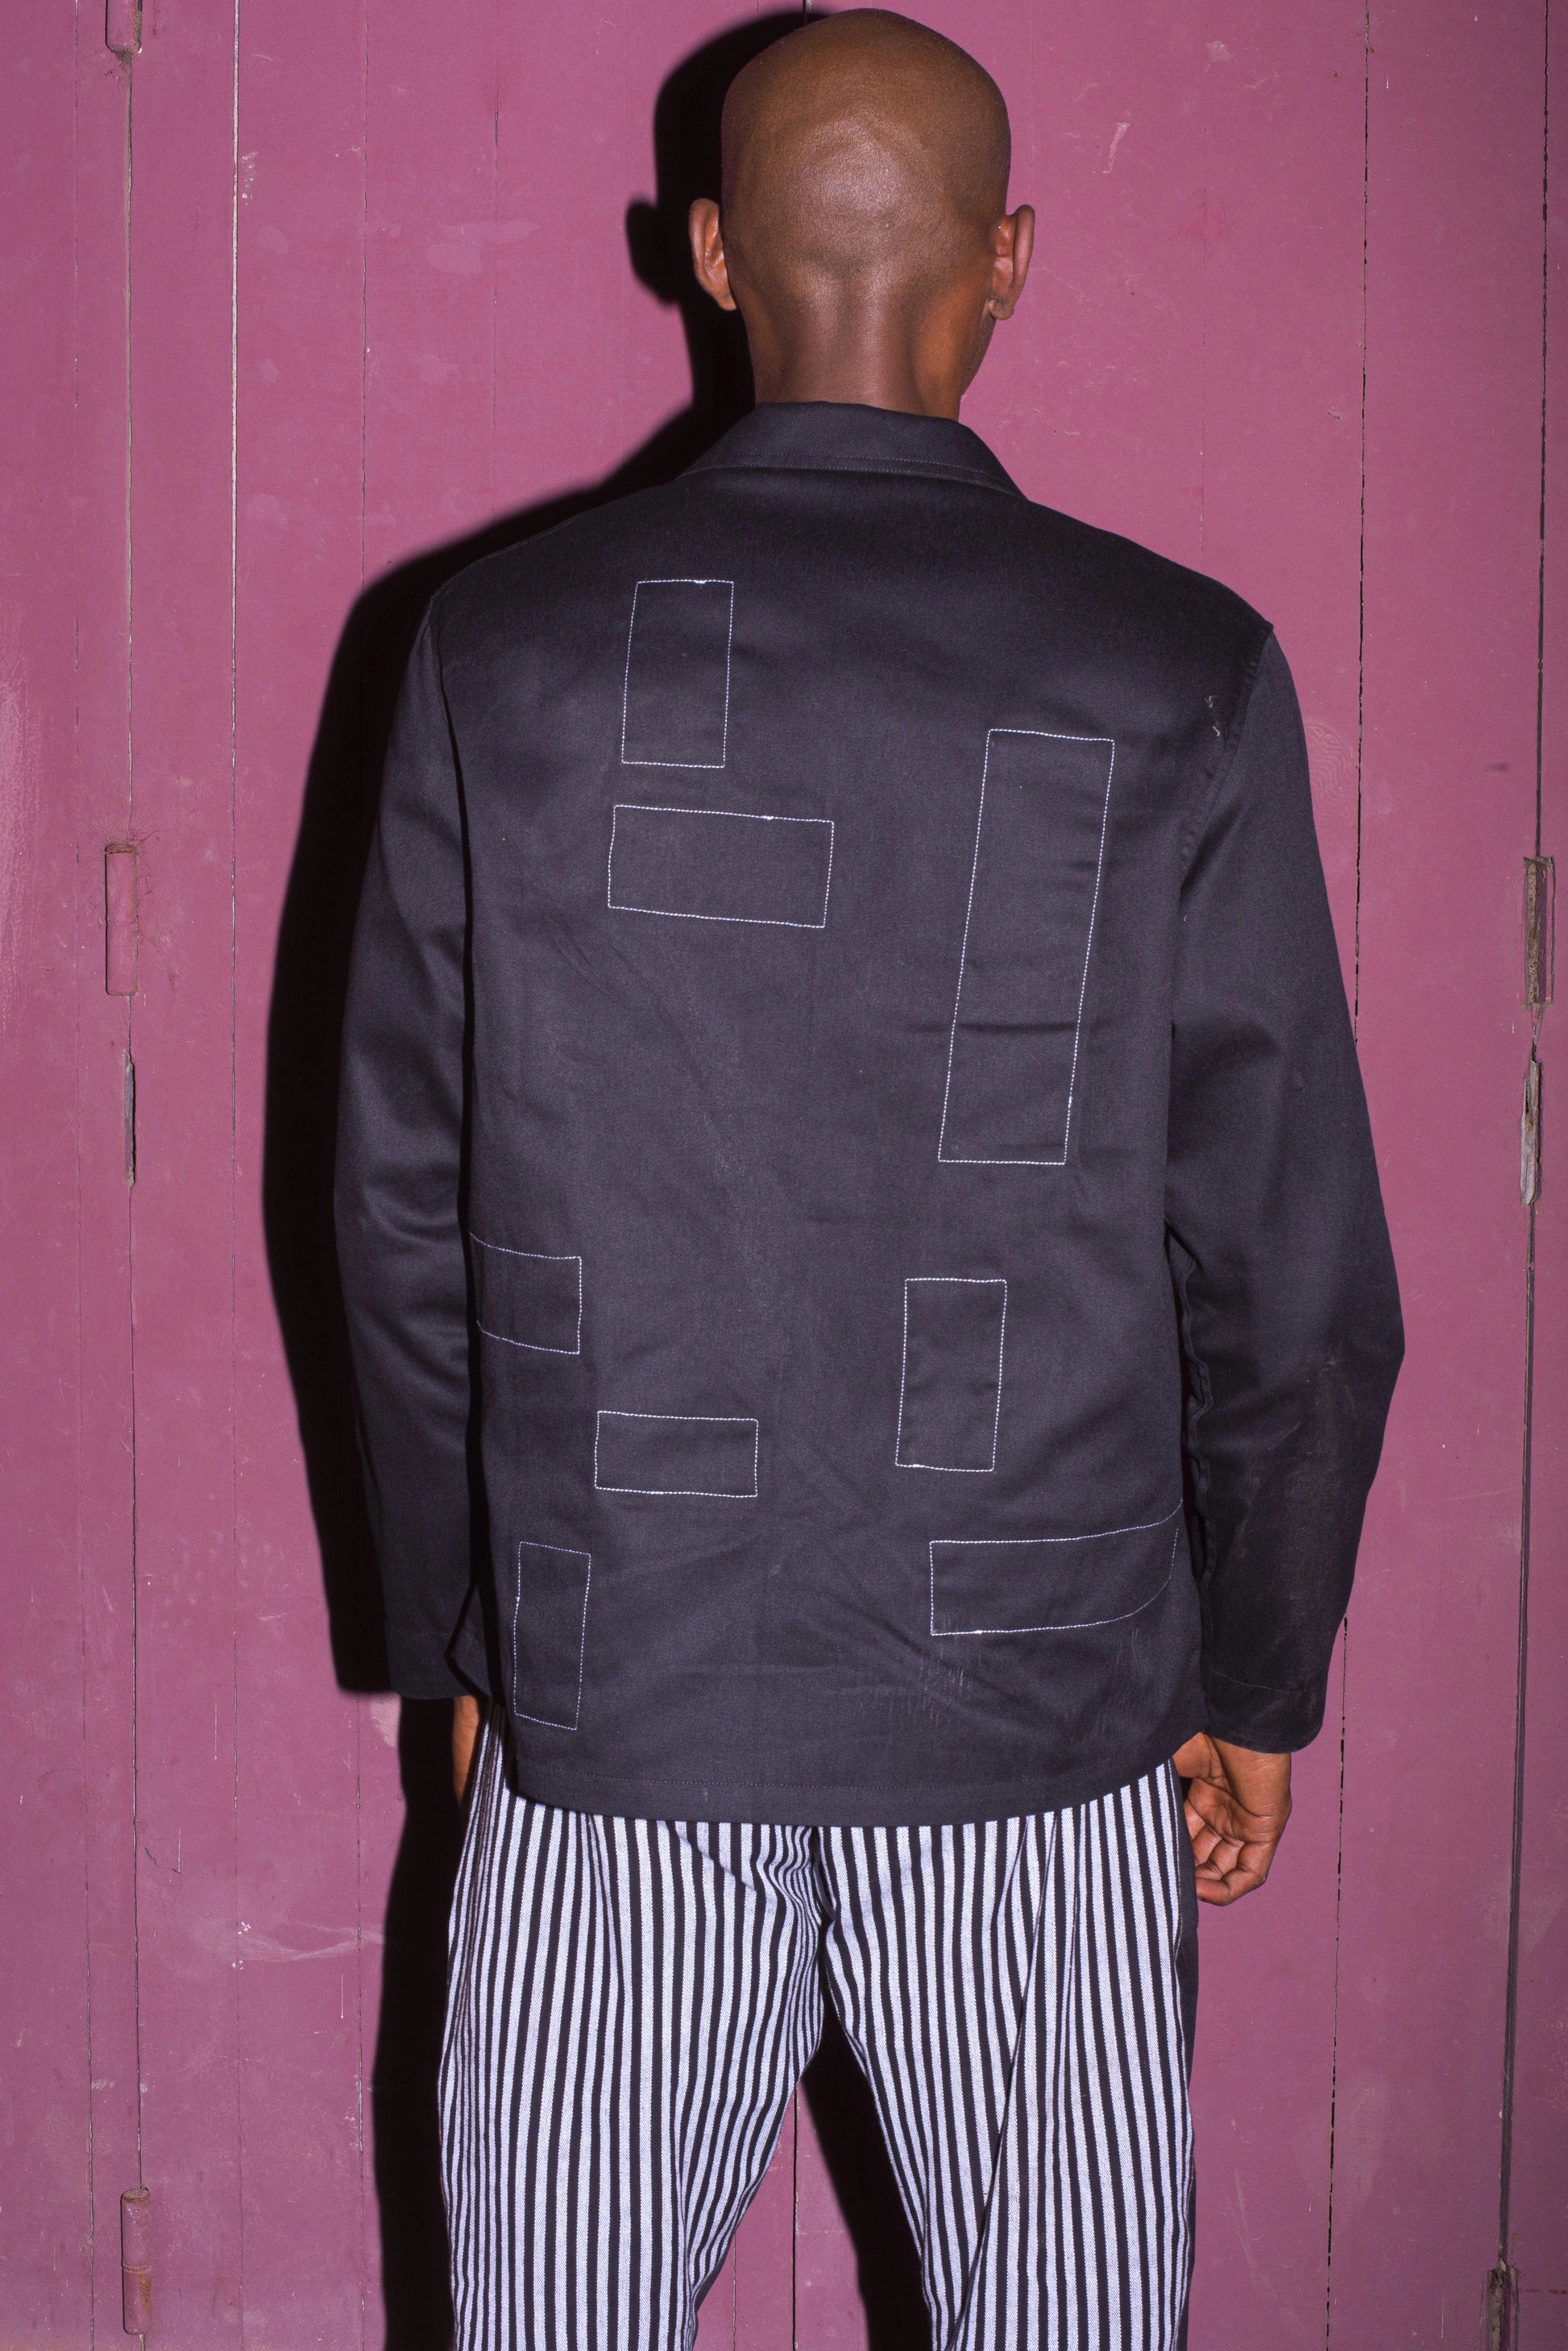 LAxCM Creative - Black Work-jacket LaurenceAirline 